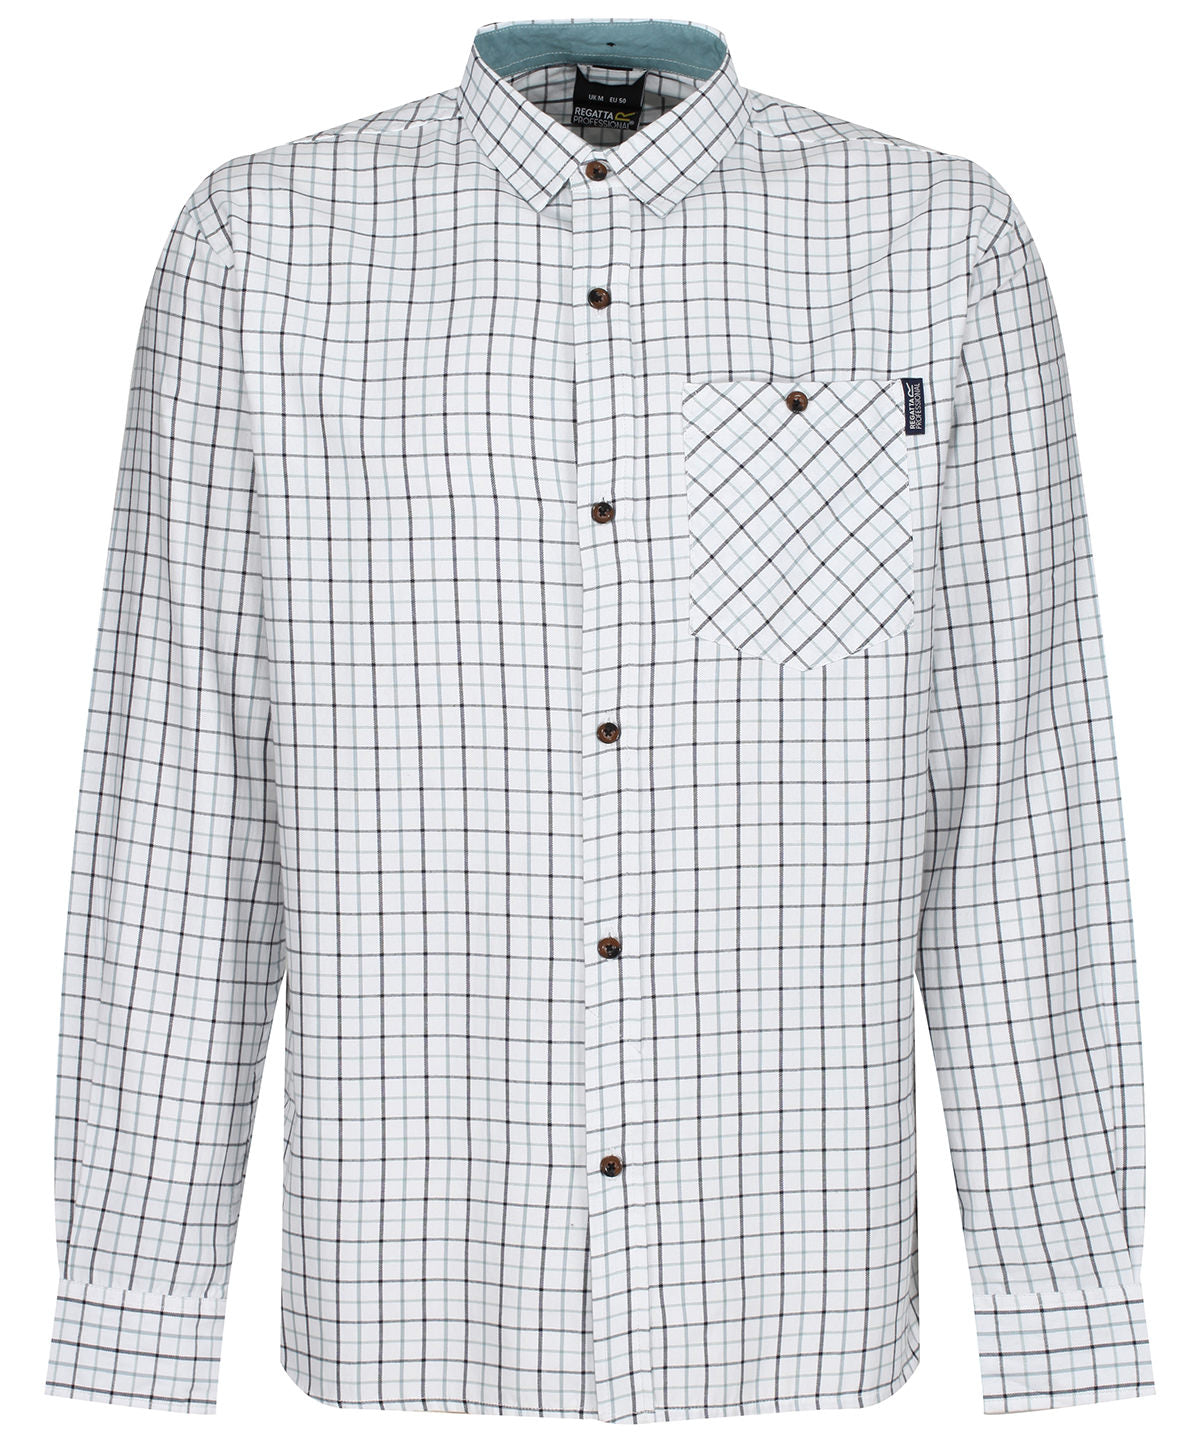 Bolir - Tattersall Check Shirt